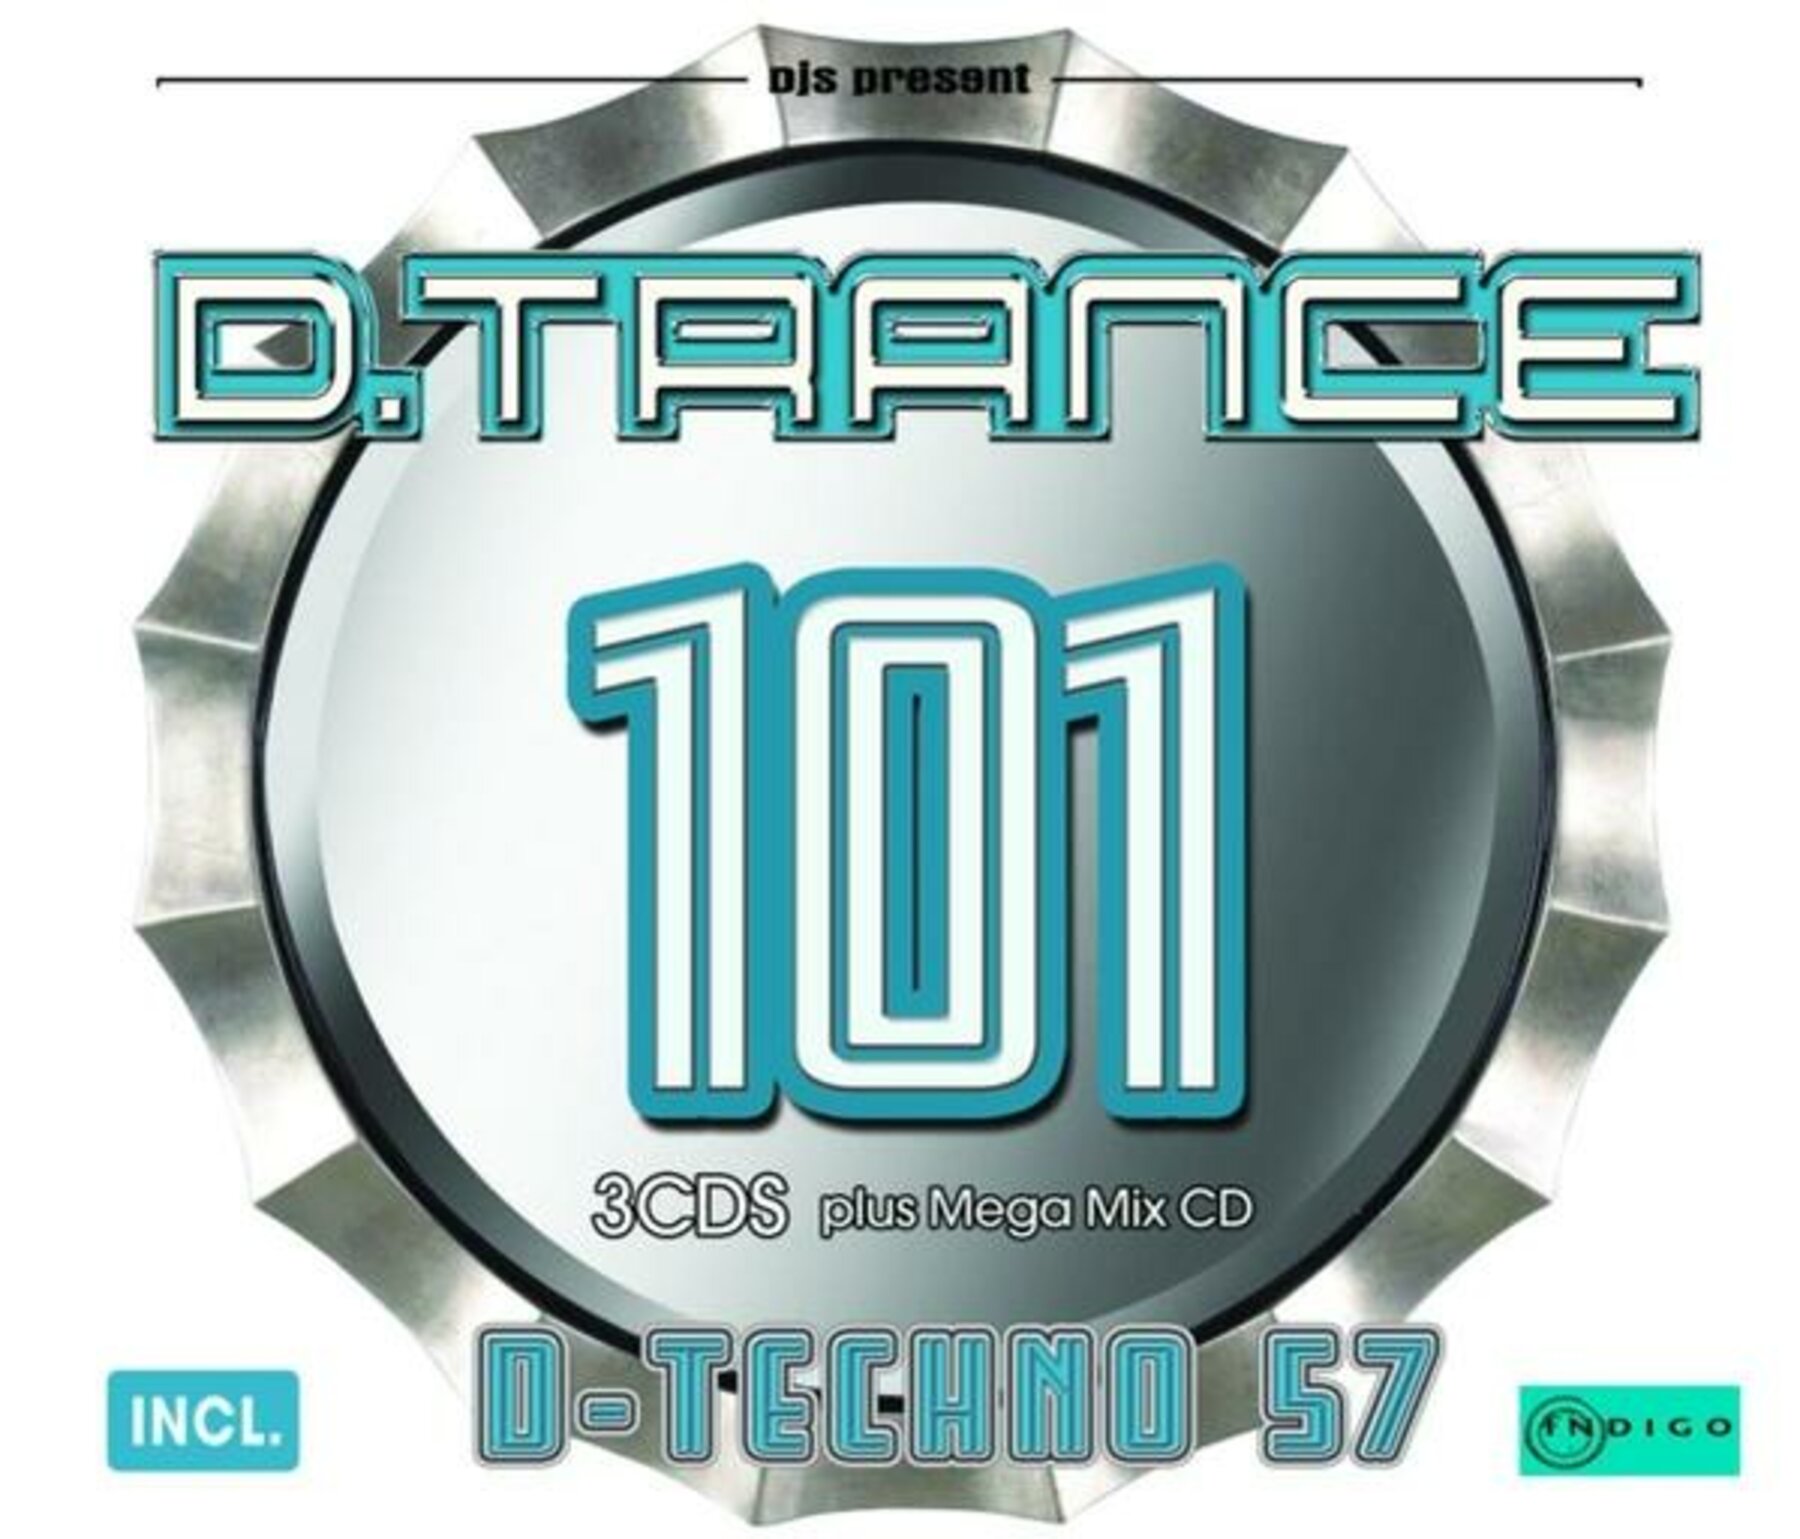 VA - D.Trance 101 (Incl. D Techno 57)